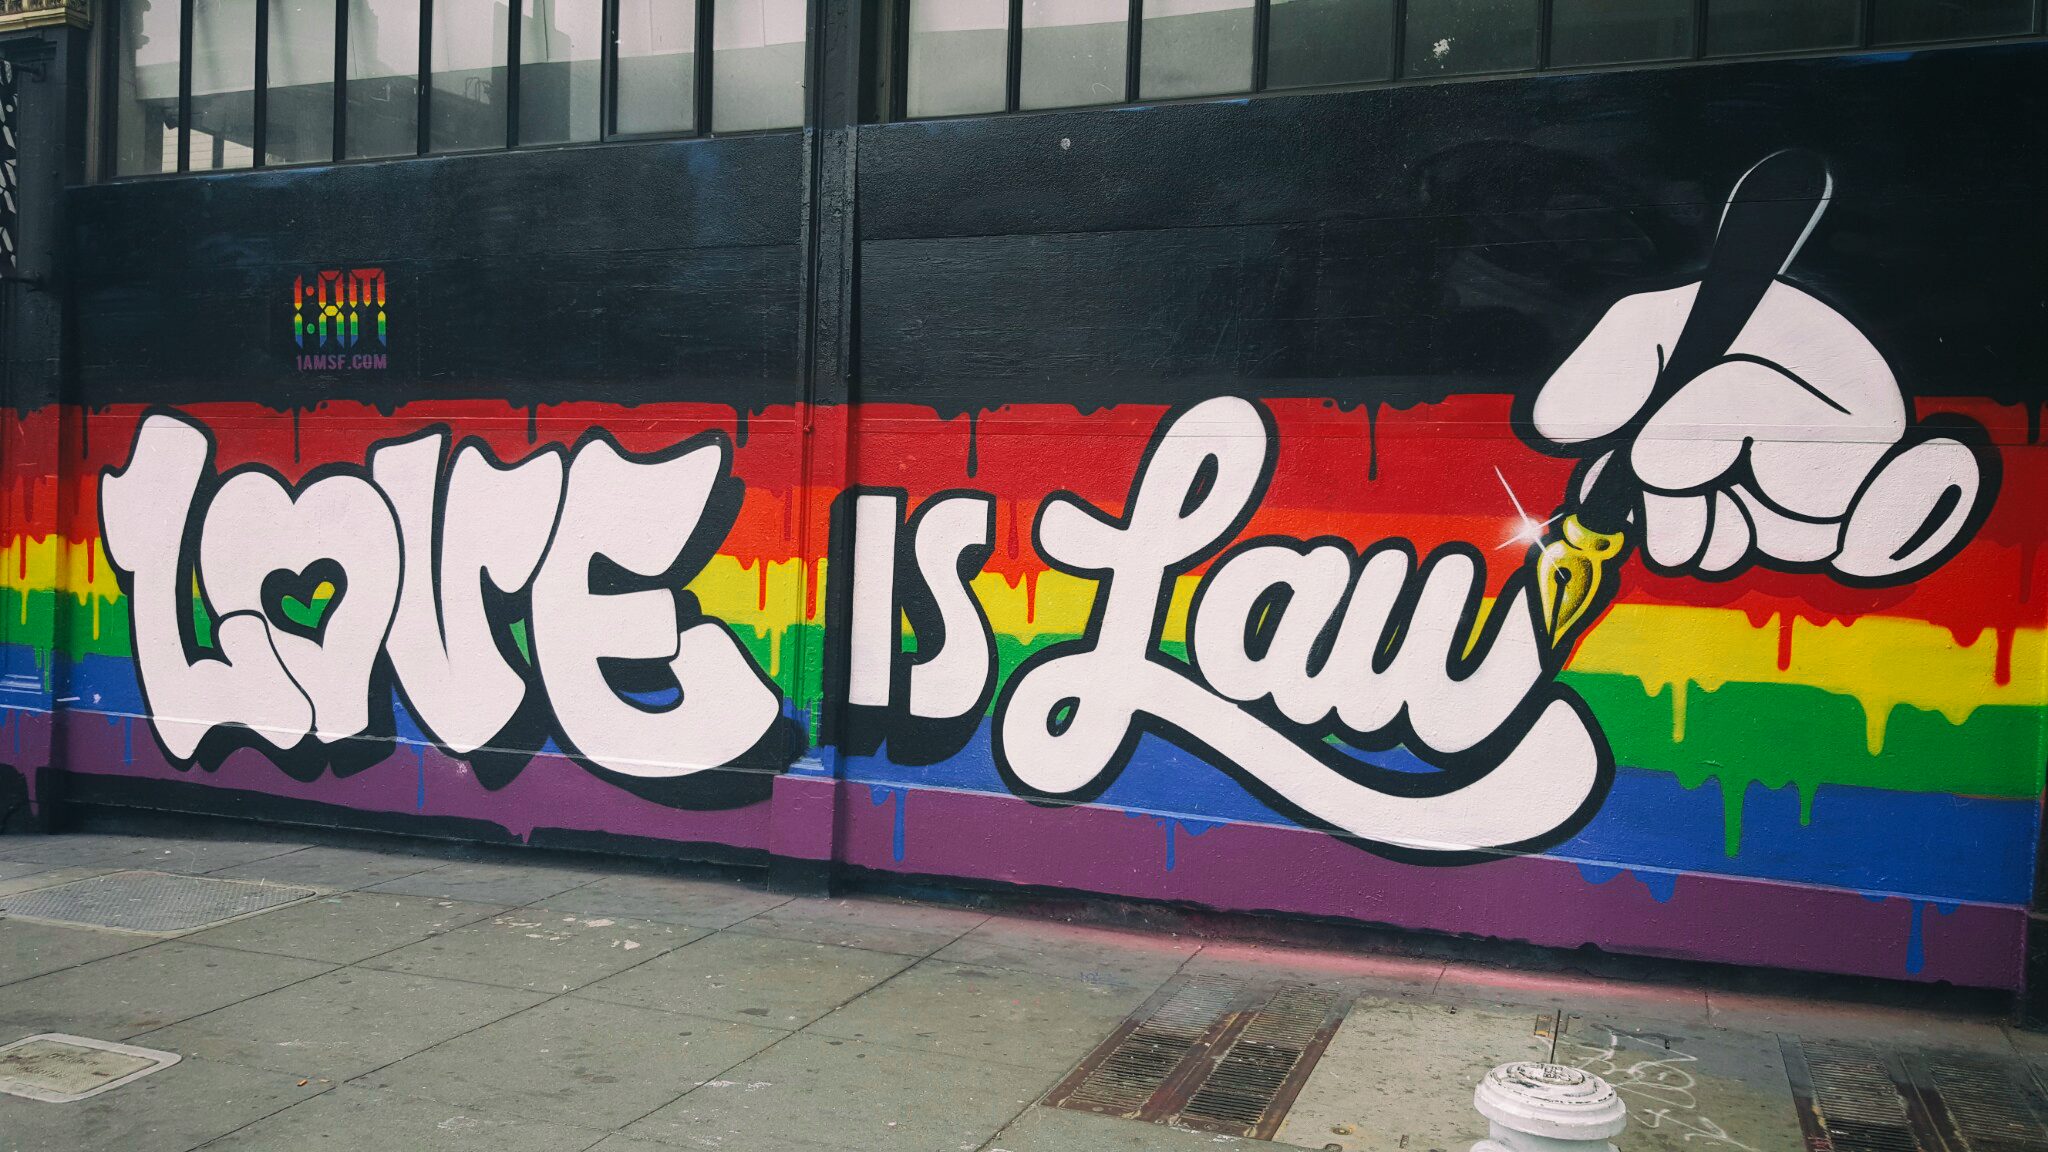 Love is граффити